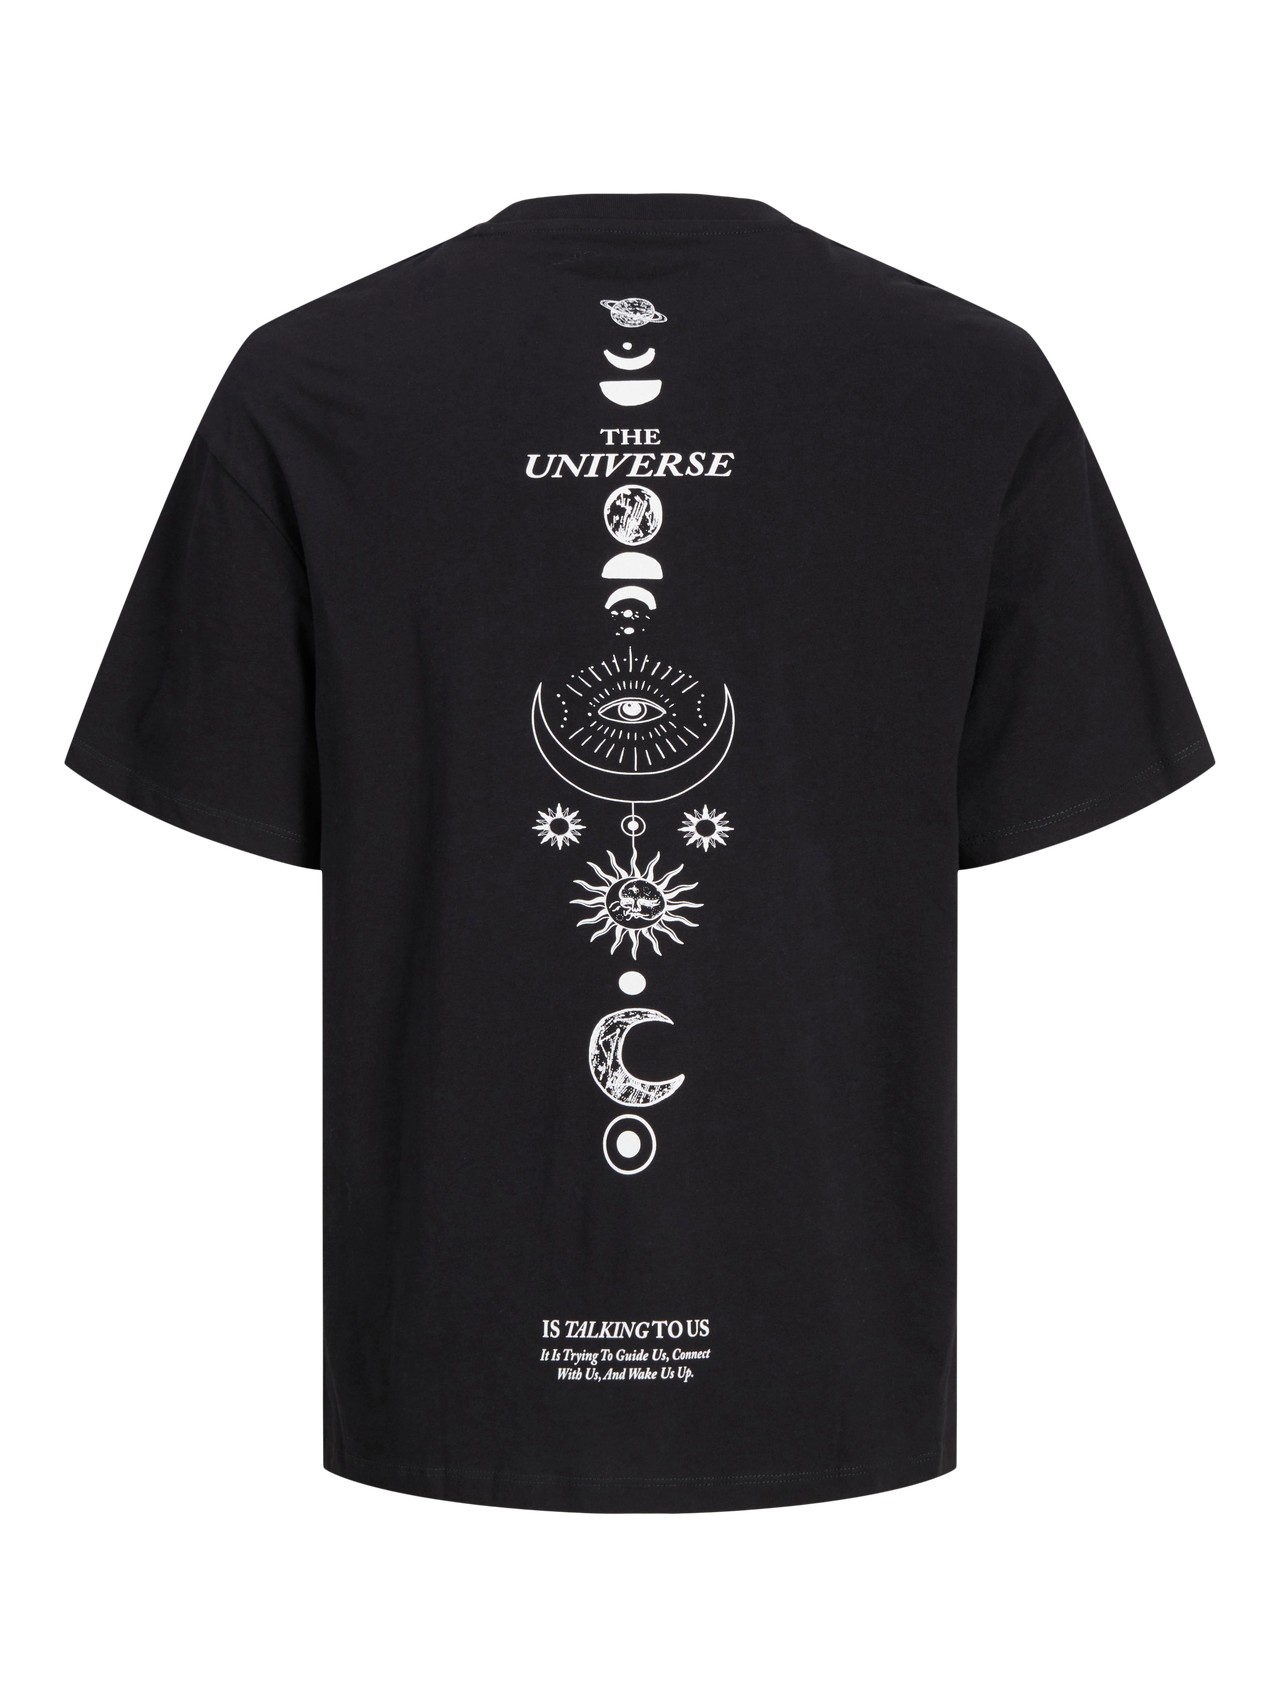 Jack & Jones Nadruk Okrągły dekolt T-shirt -Black - 12270778